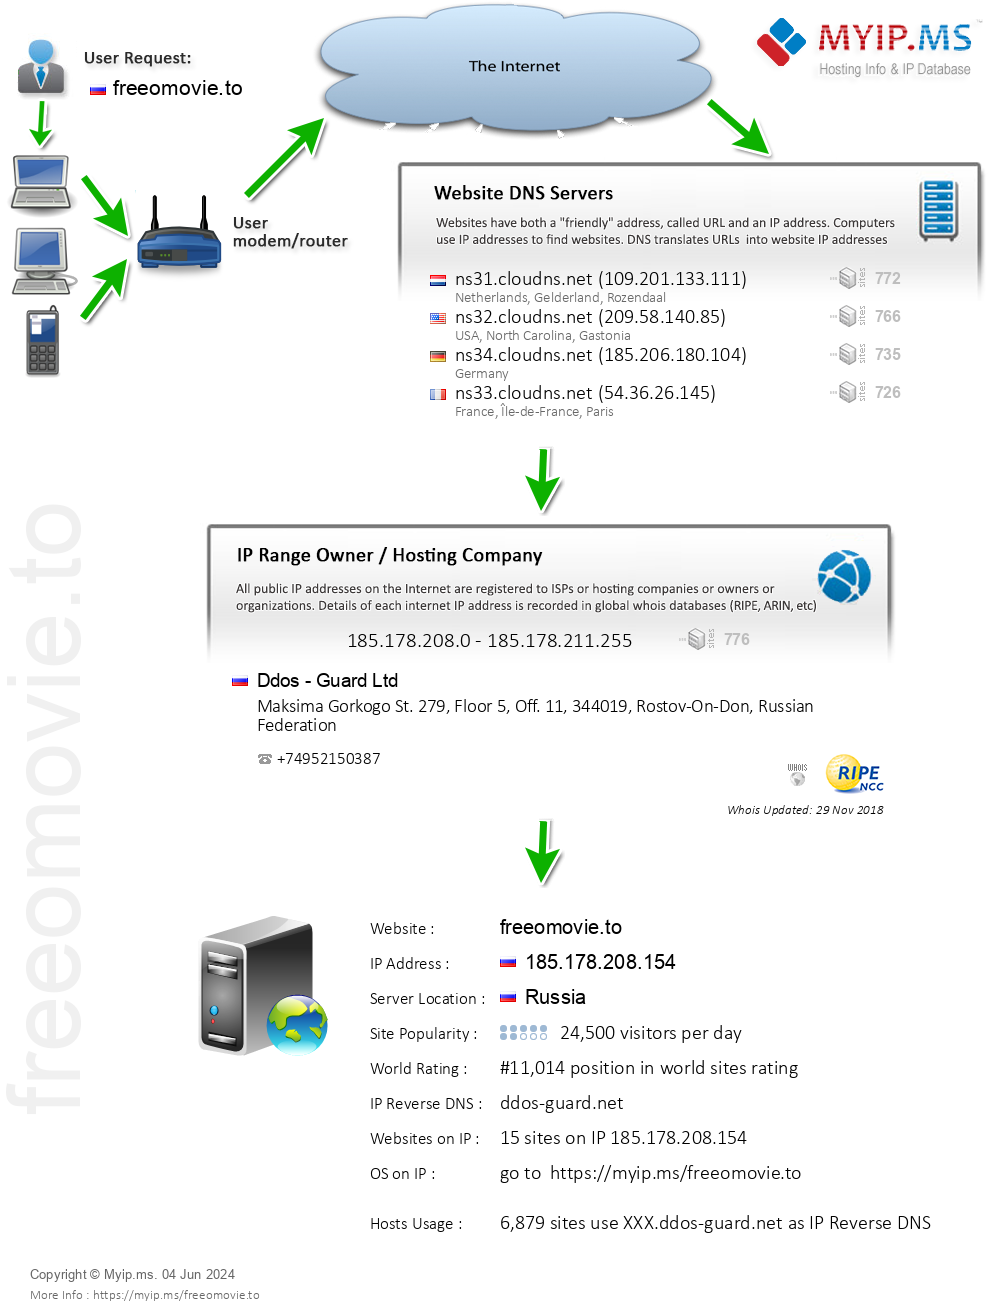 Freeomovie.to - Website Hosting Visual IP Diagram